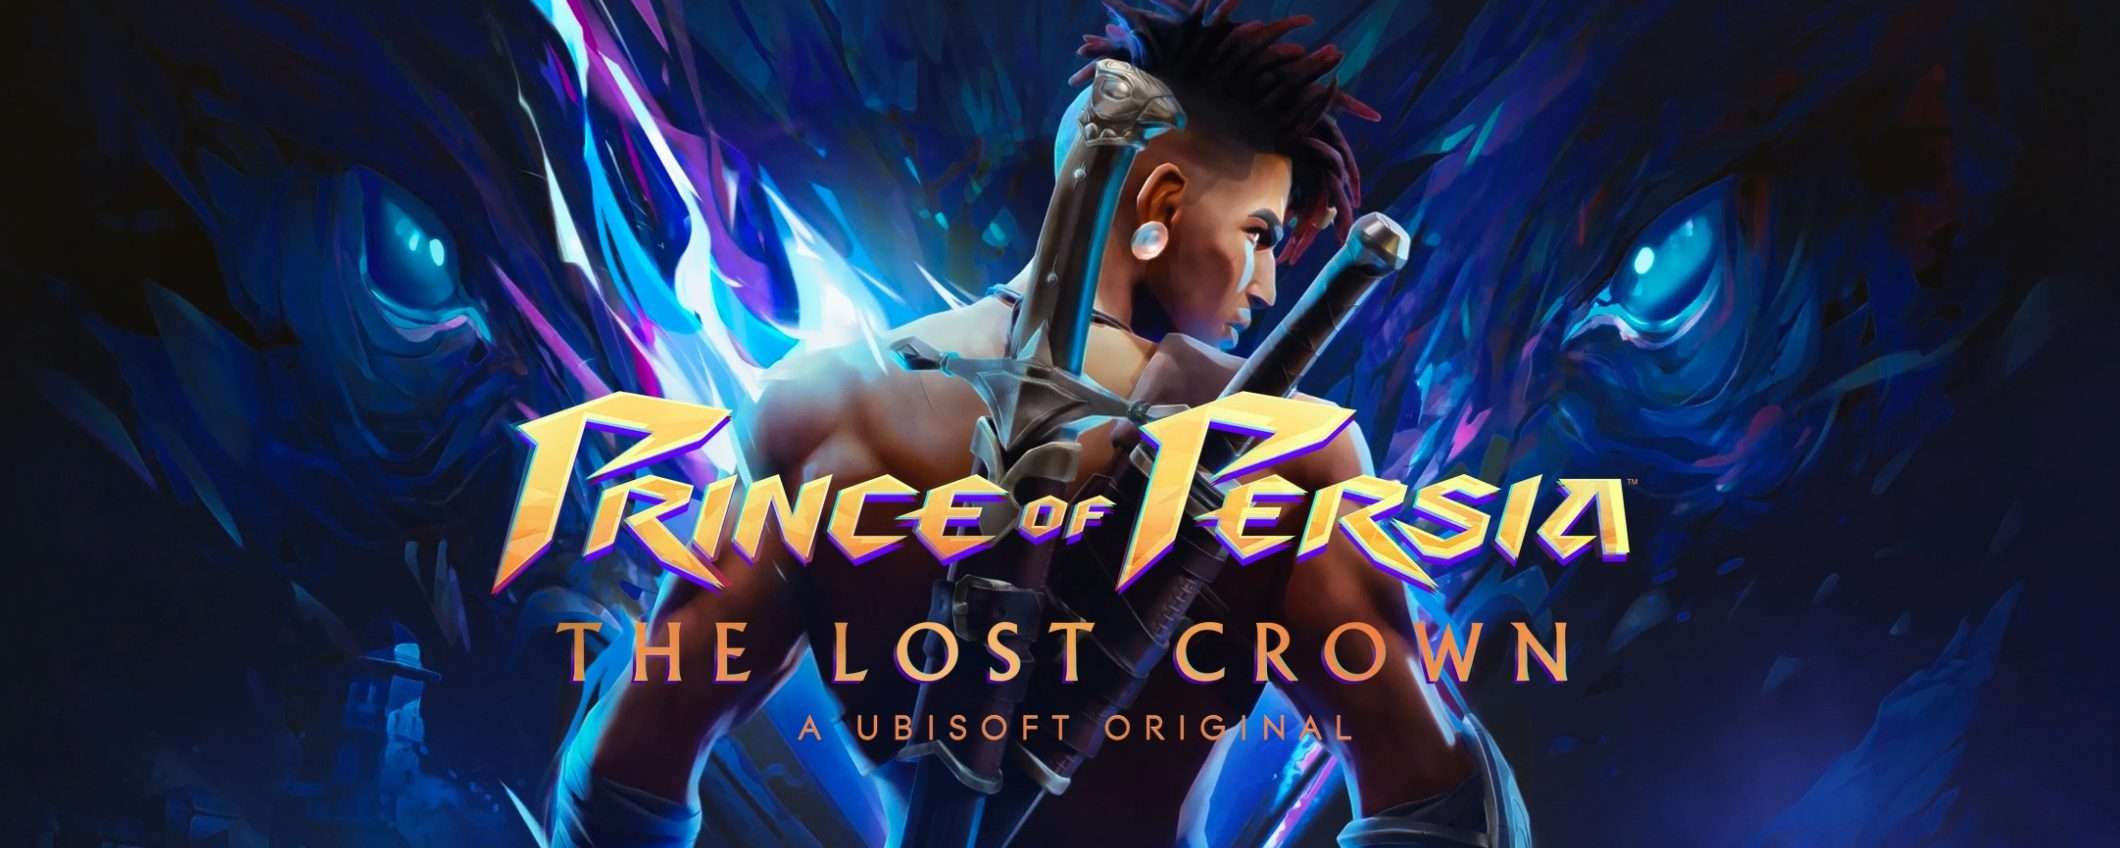 Prince of Persia: The Lost Crown a prezzo SPECIALE su eBay per PS5